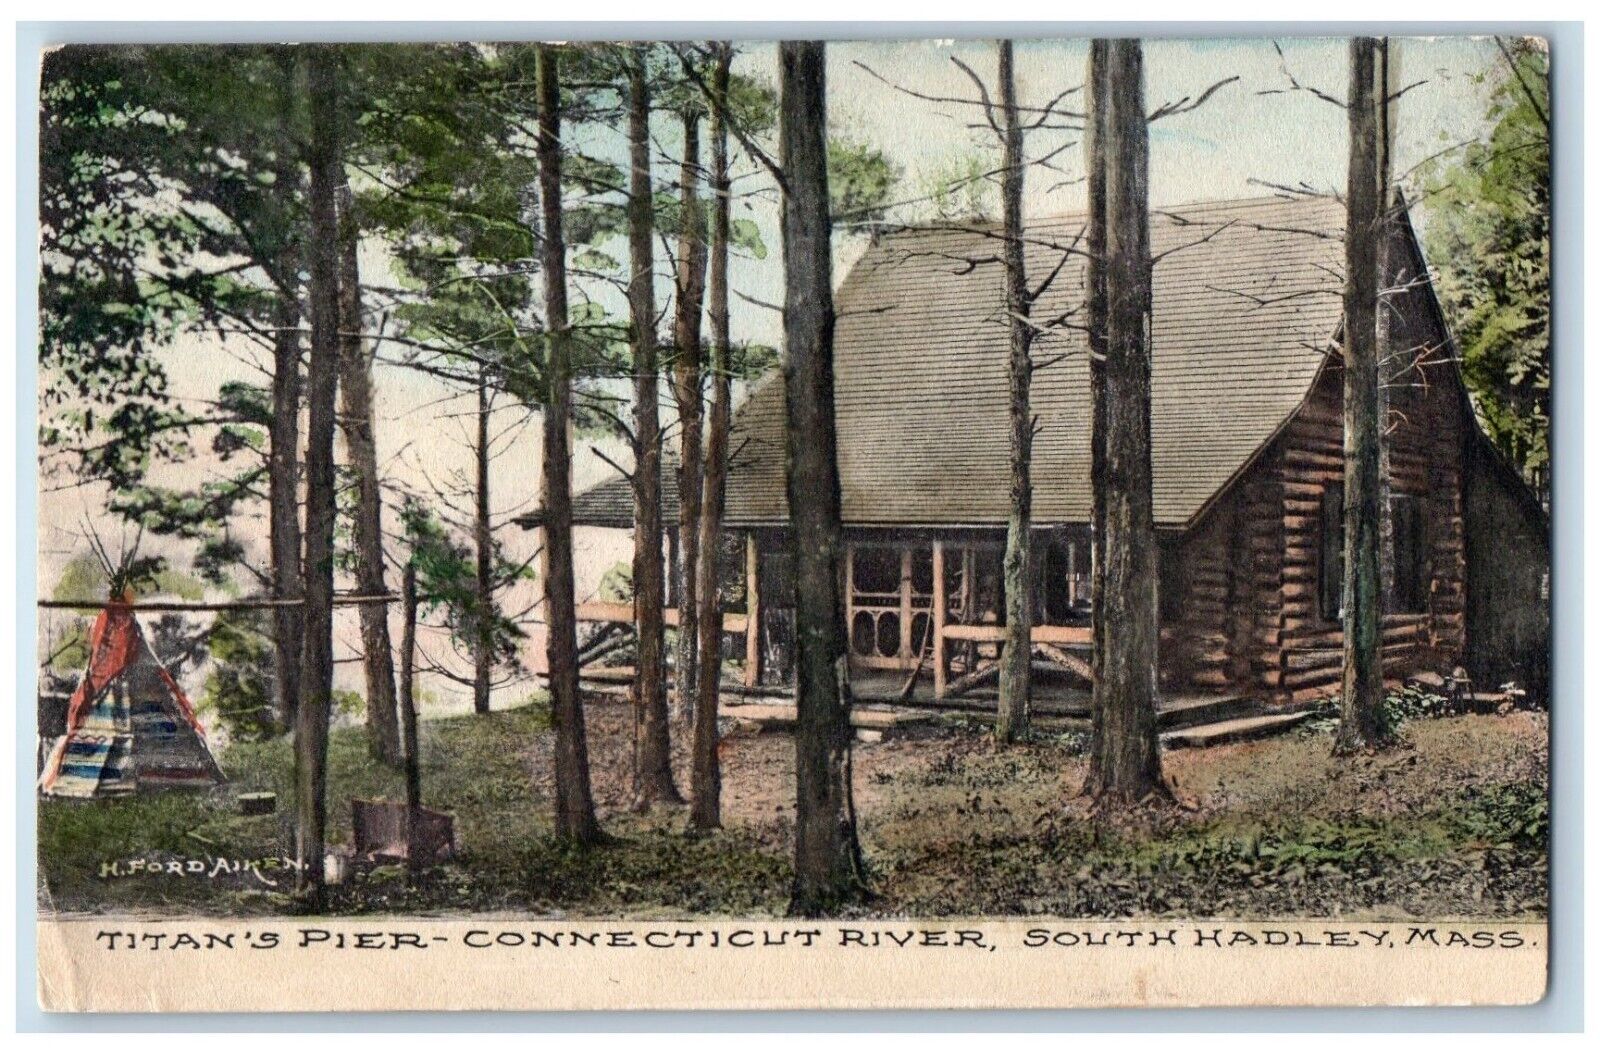 South Hadley Massachusetts Postcard Titan's Pier Connecticut River c1908 Vintage